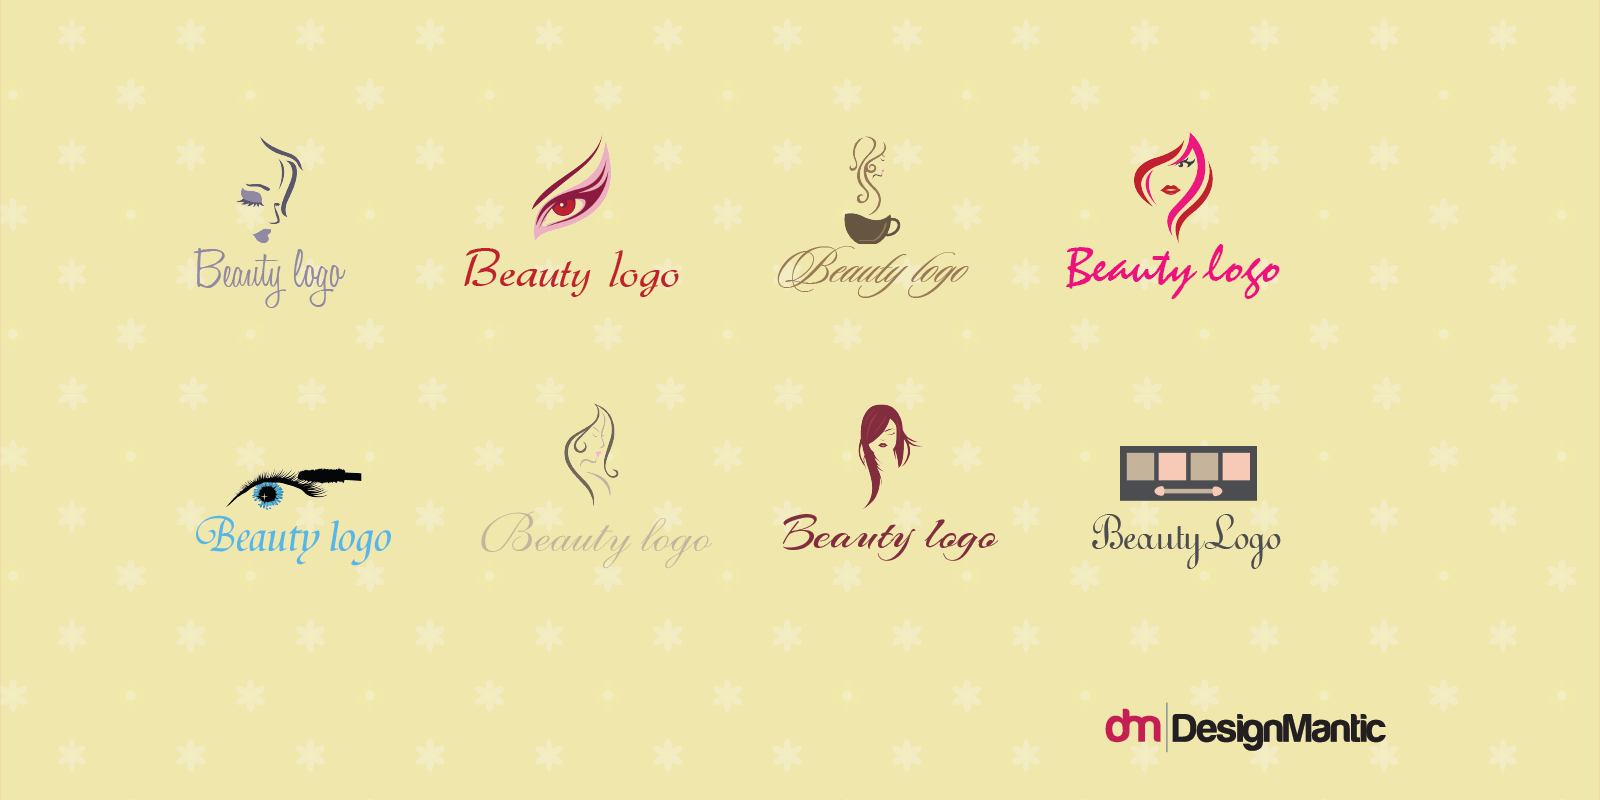 beauty company logos